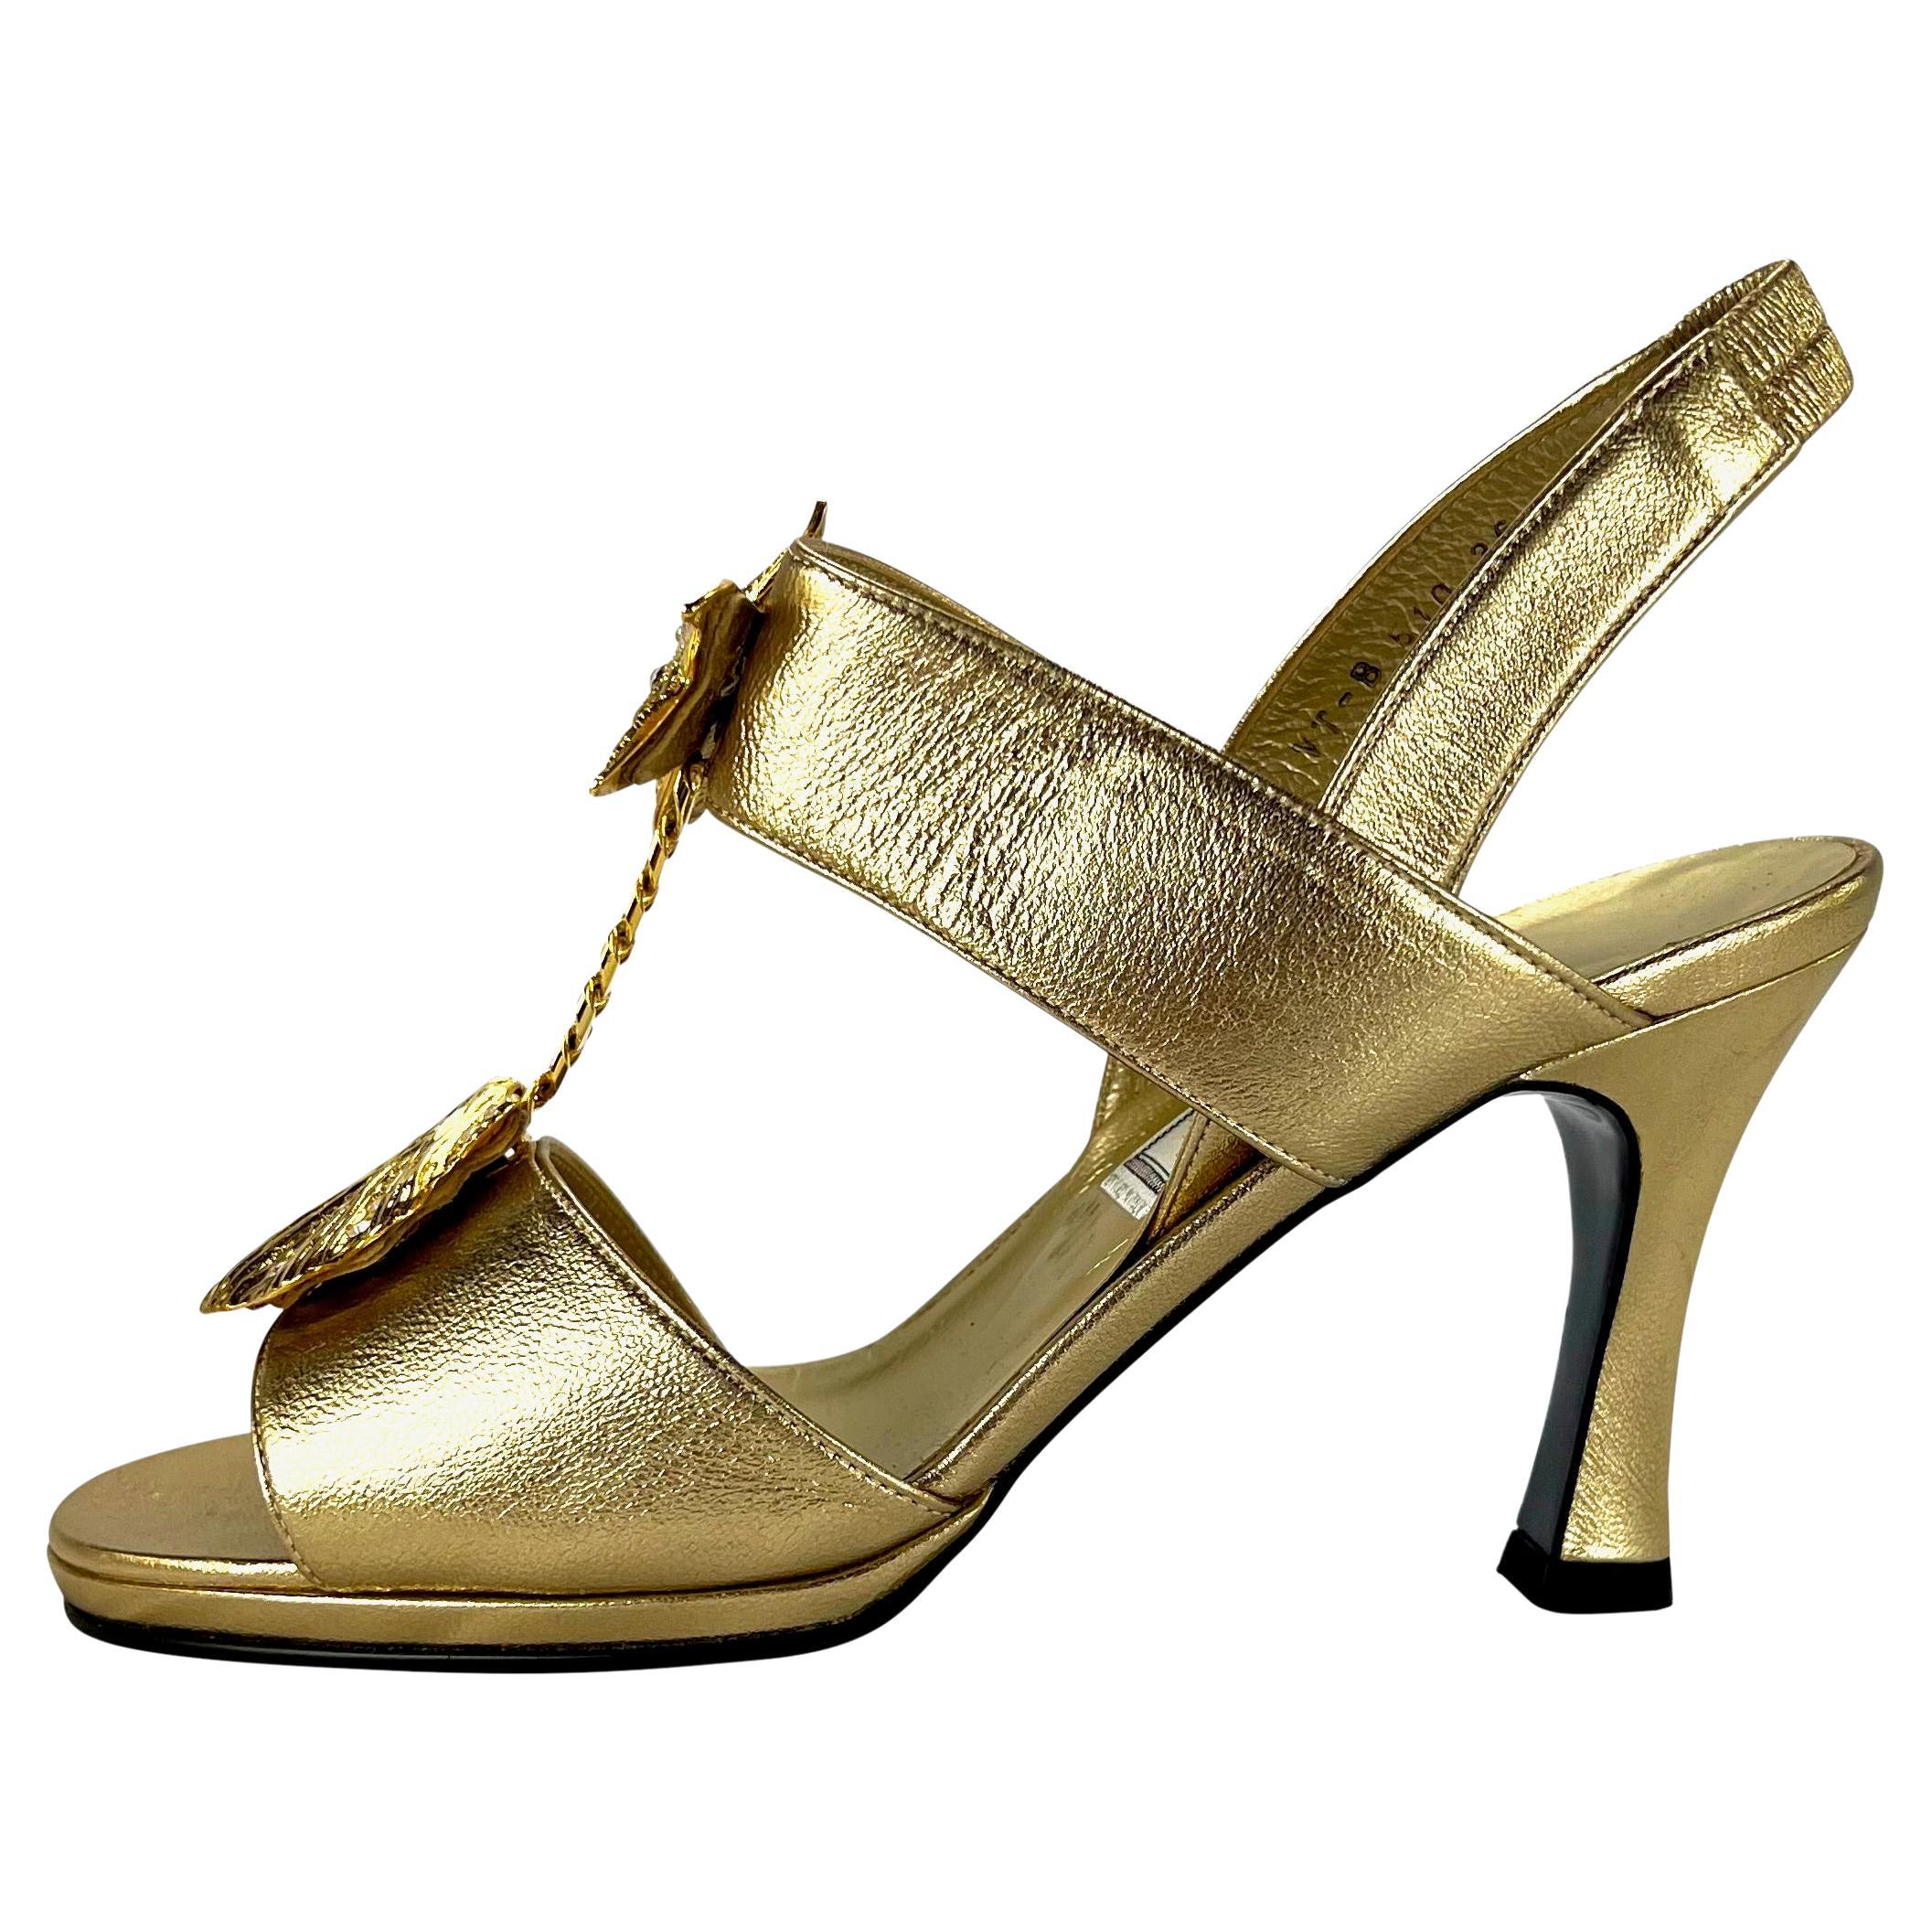 Voici une paire de sandales à talons dorées à motif Mare de Gianni Versace, conçues par Gianni Versace. Dans la collection printemps/été 1992, des talons dorés similaires ont fait leur apparition sur les podiums de la saison. Cette fabuleuse paire